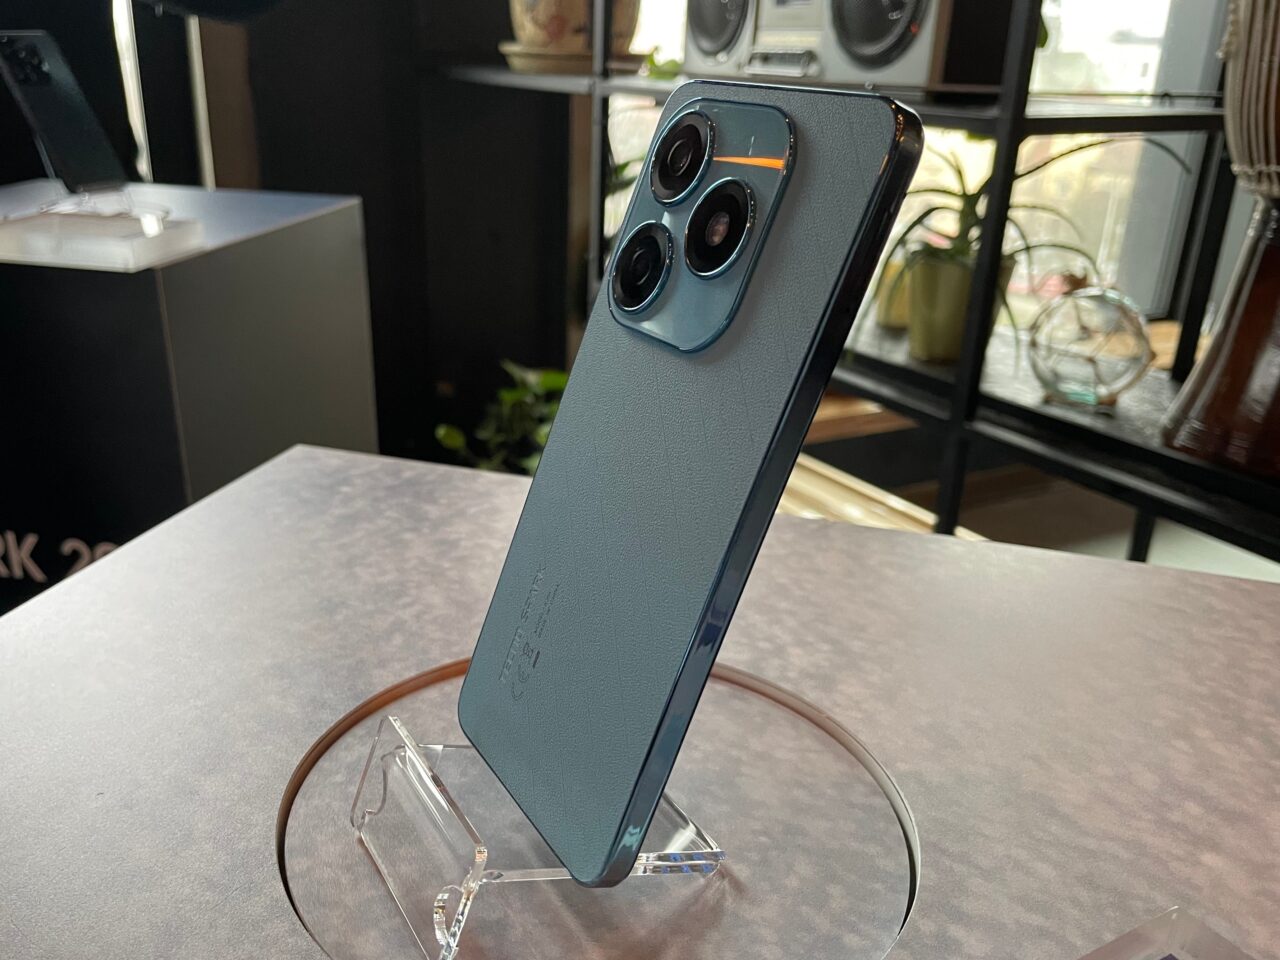 Smartfon tecno spark 20 w niebieskim etui stoi na przezroczystym stojaku, z tyłu widać potrójny aparat fotograficzny.